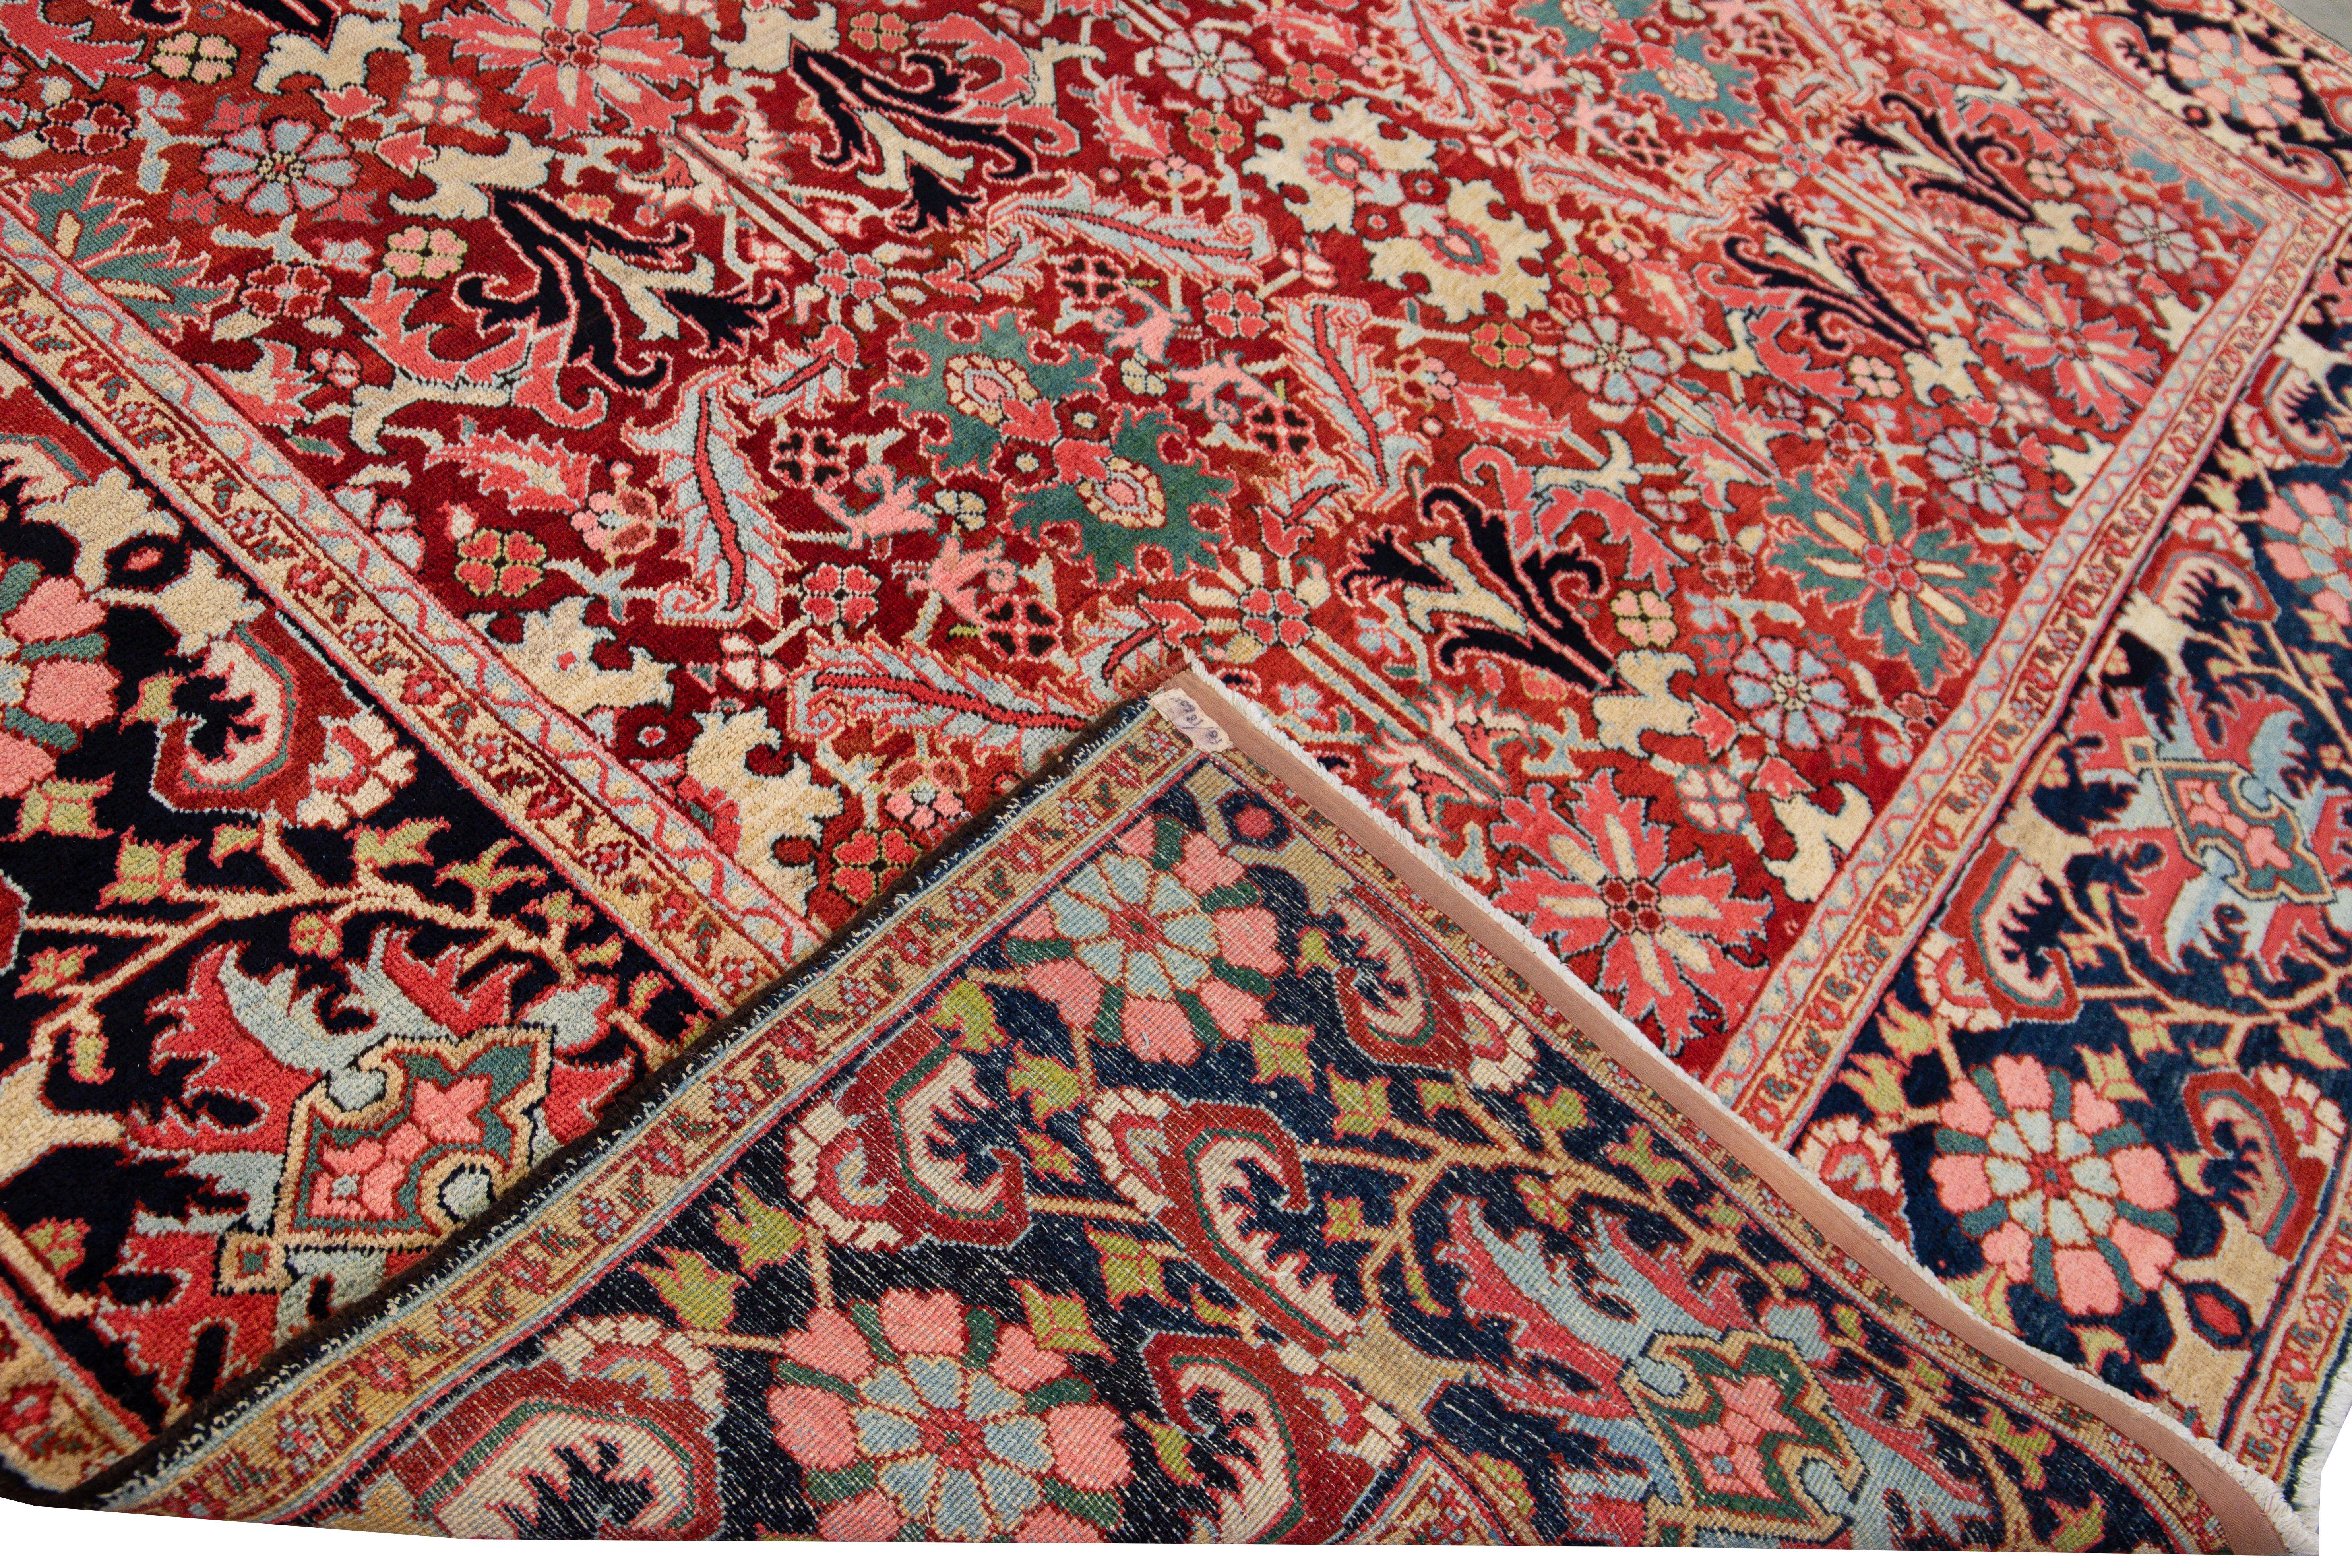 Schöner antiker persischer Heriz-Handknüpfteppich aus Wolle mit rotem Feld. Dieser Serapi-Teppich hat einen marineblauen Rahmen und mehrfarbige Akzente in einem prächtigen floralen Tribal-Muster, das überall zu sehen ist.

Dieser Teppich misst: